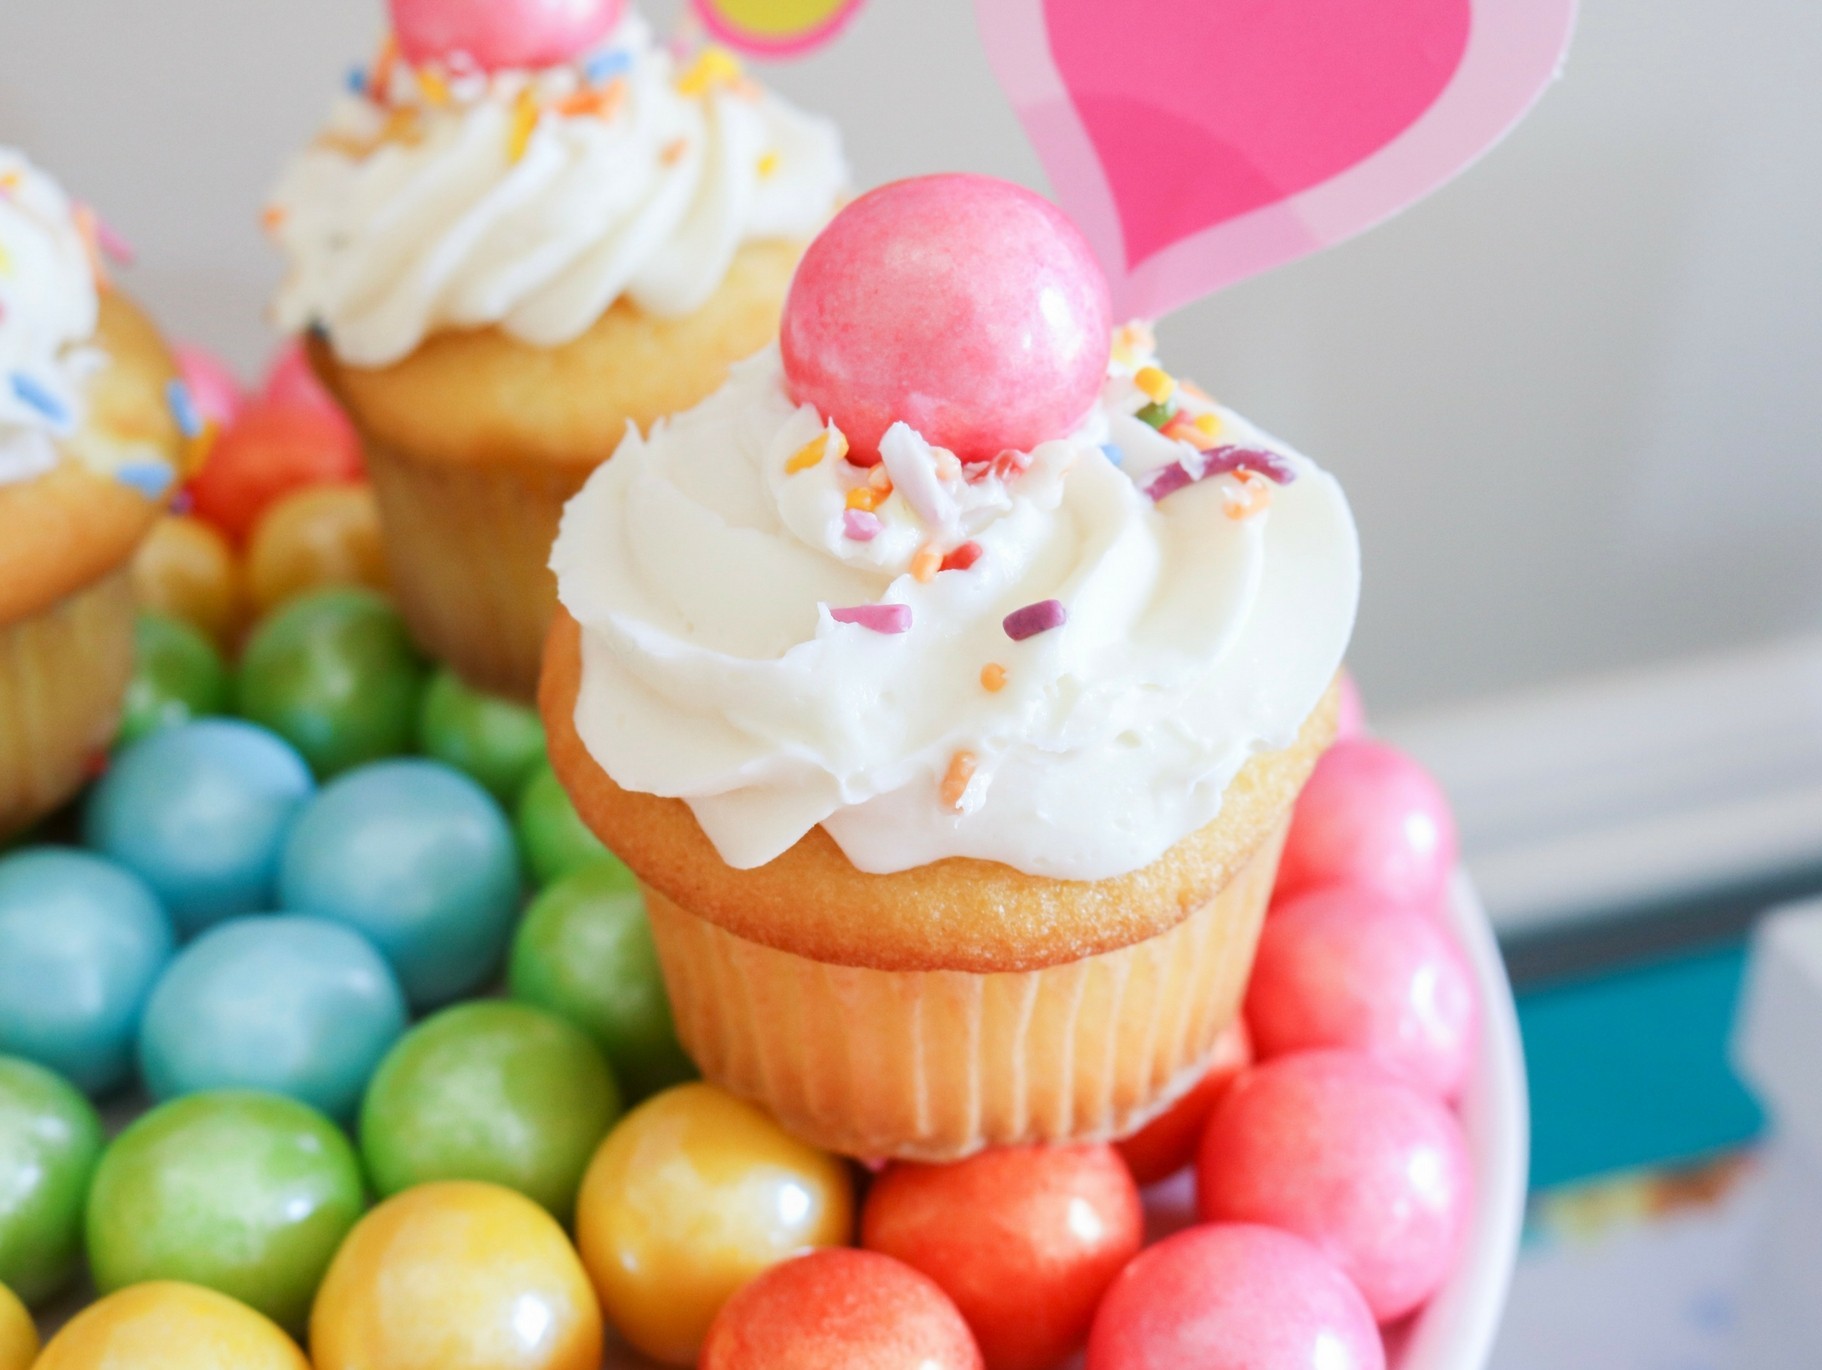 surprise cupcake